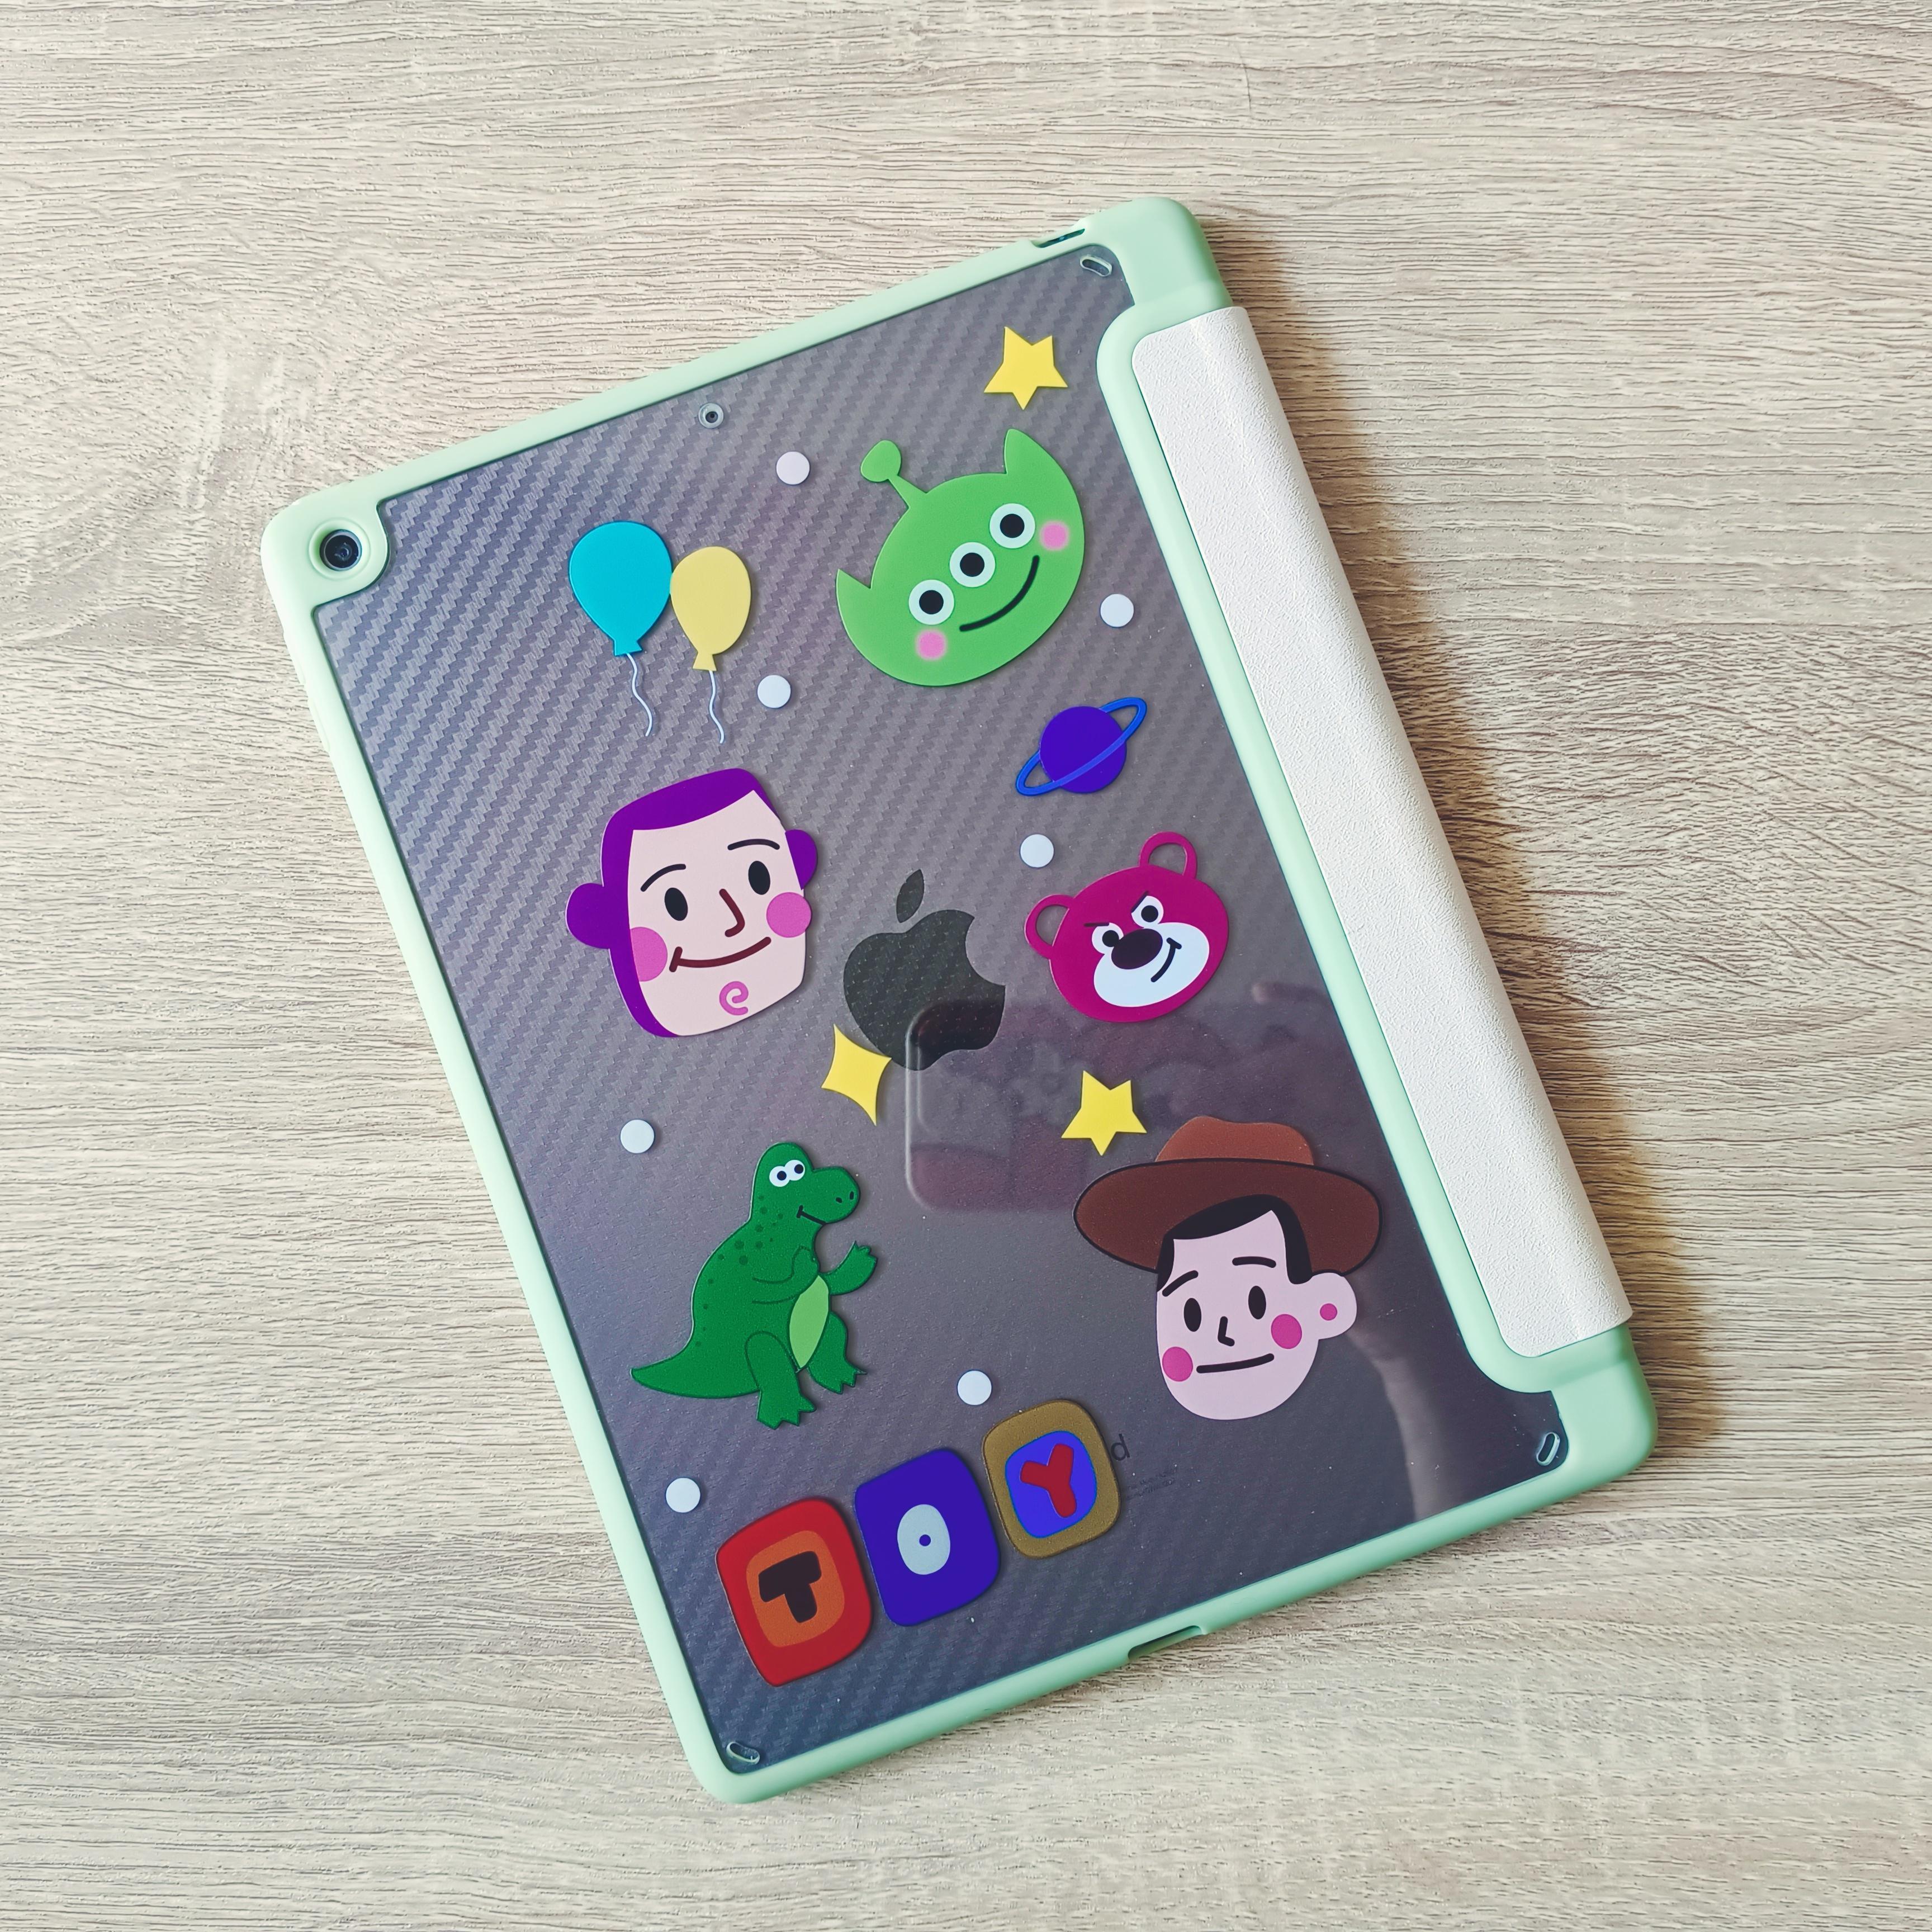 ภาพหน้าปก Case Ipad Toy story สุดน่ารัก😘 ที่:1